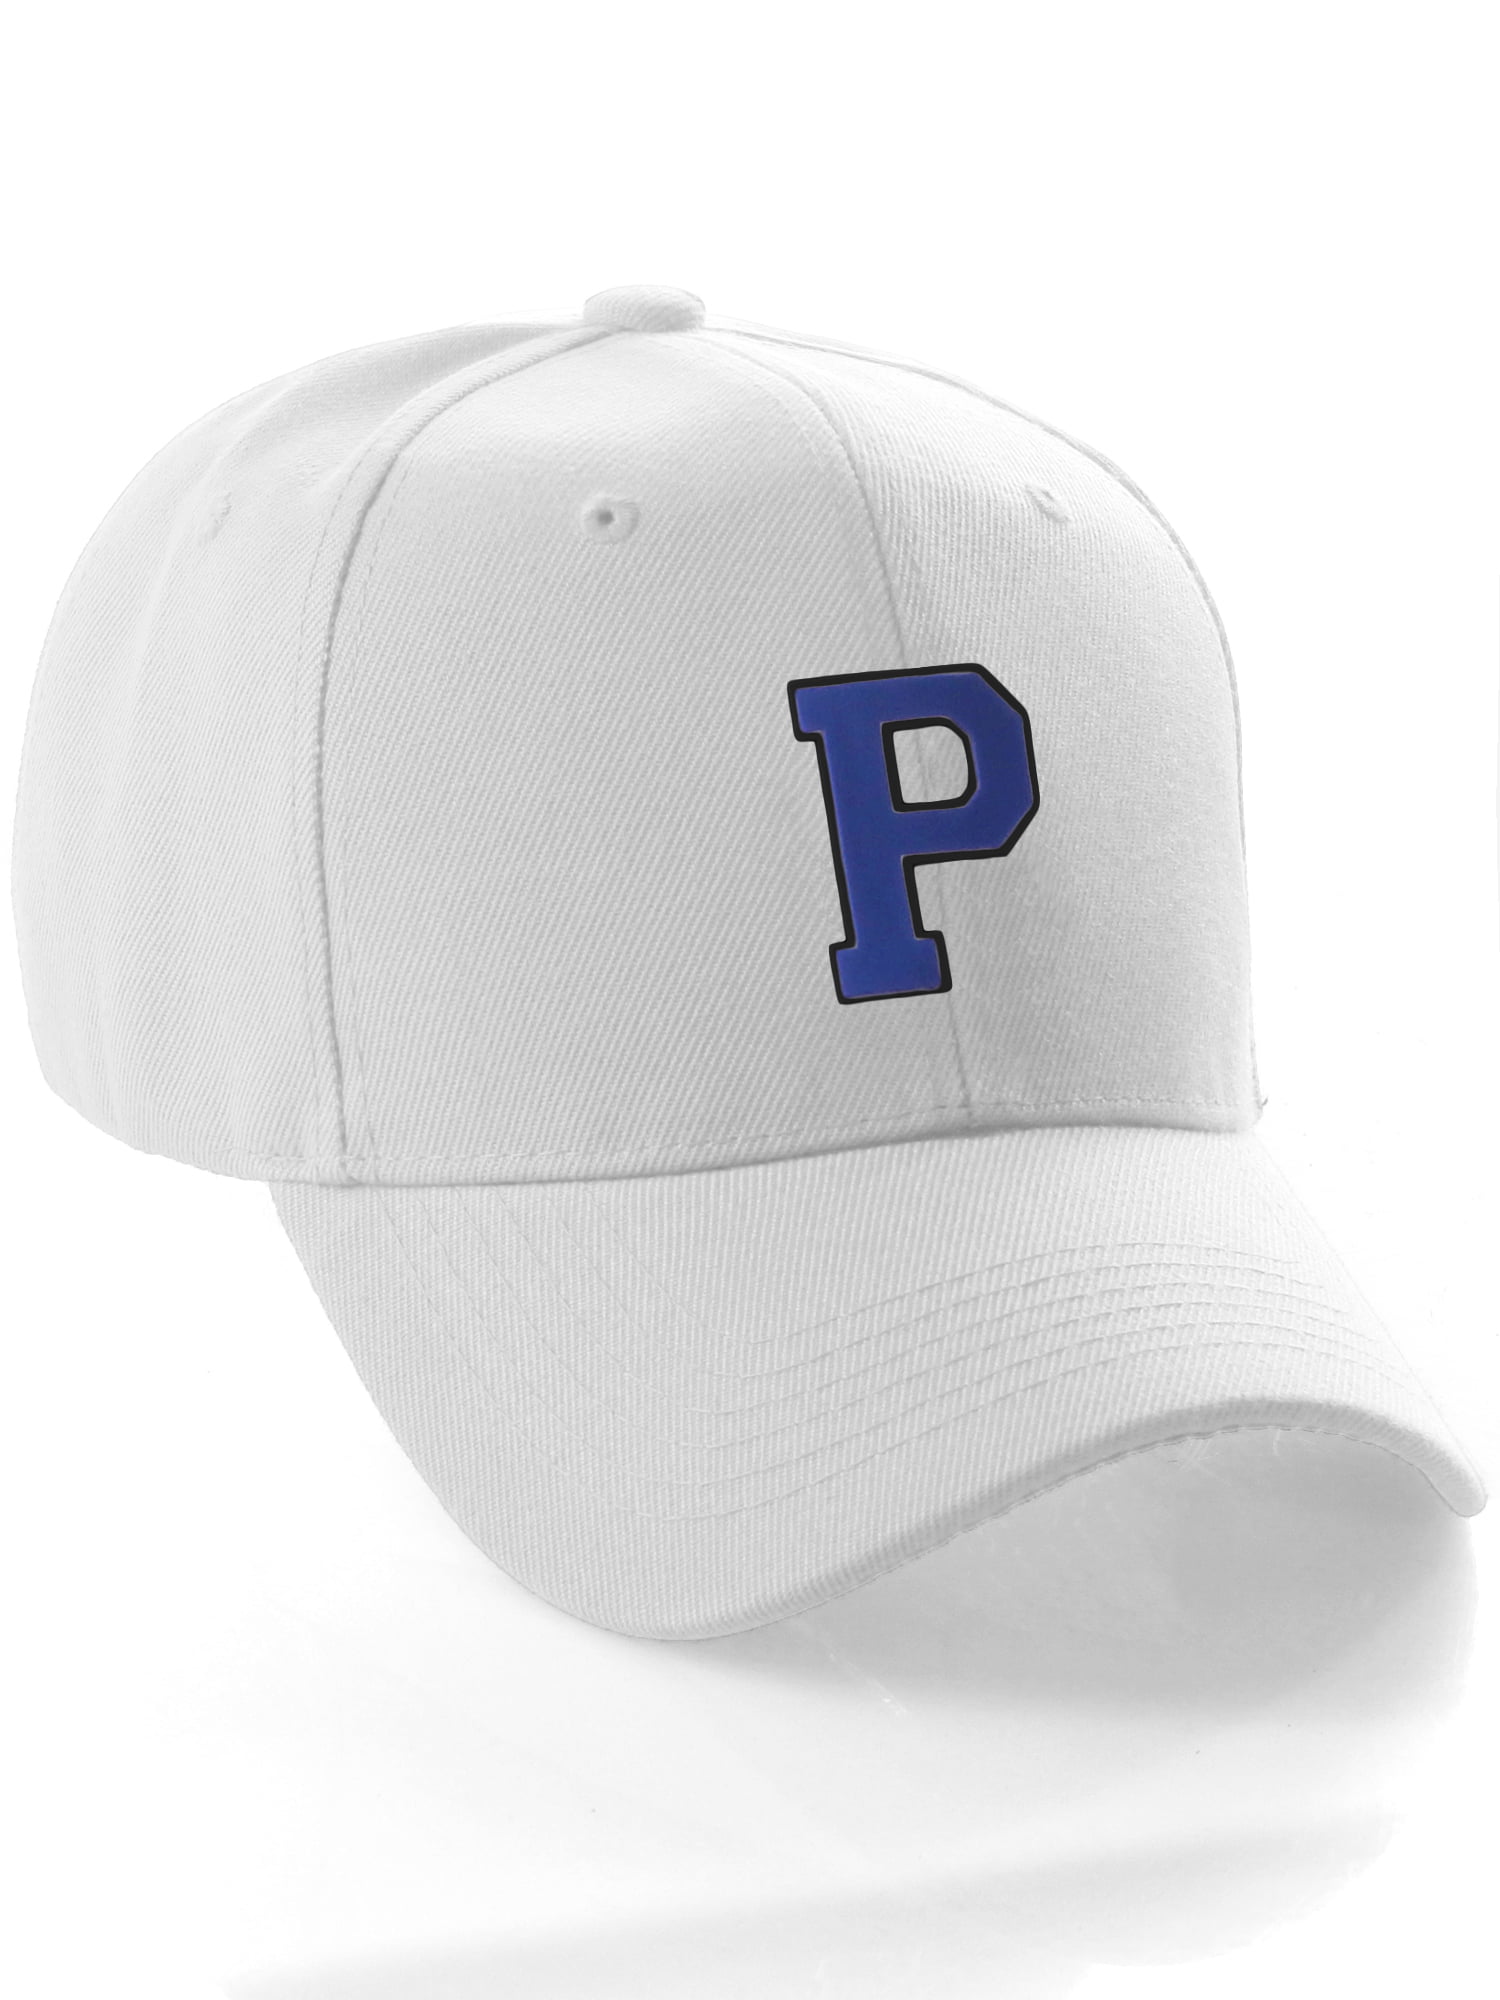 A Team White Cap Classic P Z Initial Custom Letter Black Letter, Hat Blue Baseball to